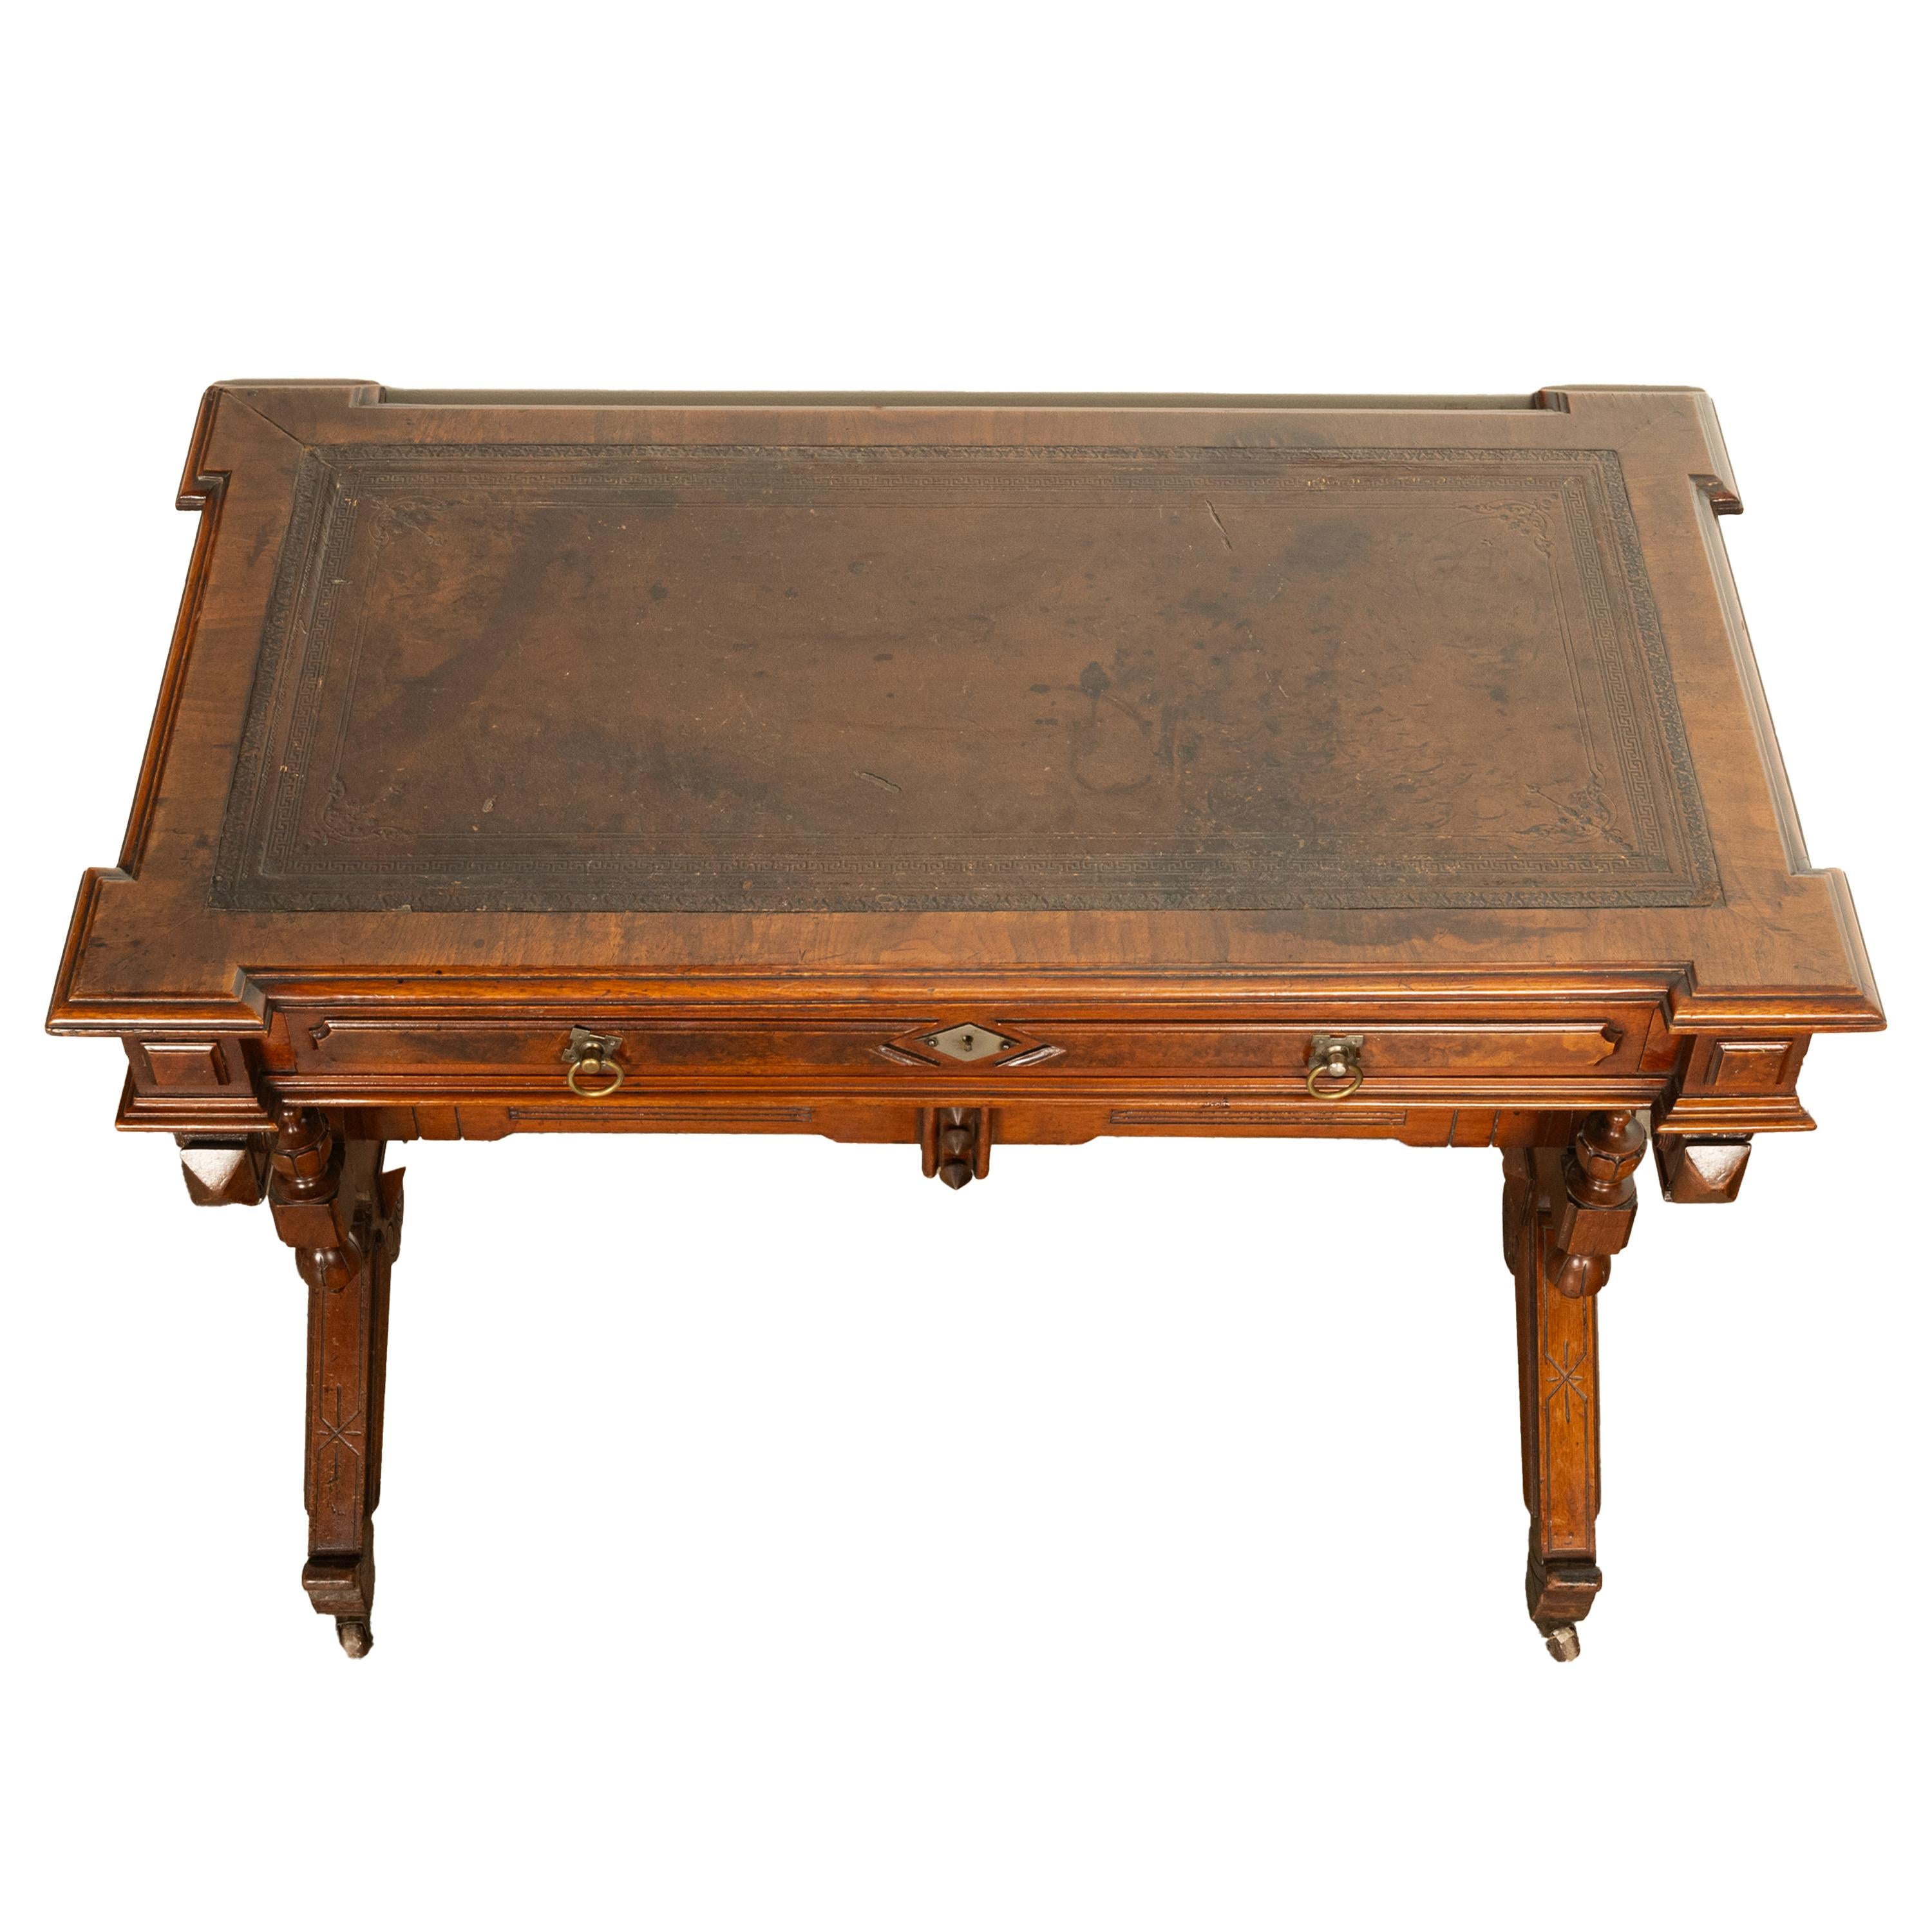 Antique American Walnut Renaissance Revival Aesthetic Movement Desk Table 1875 For Sale 2